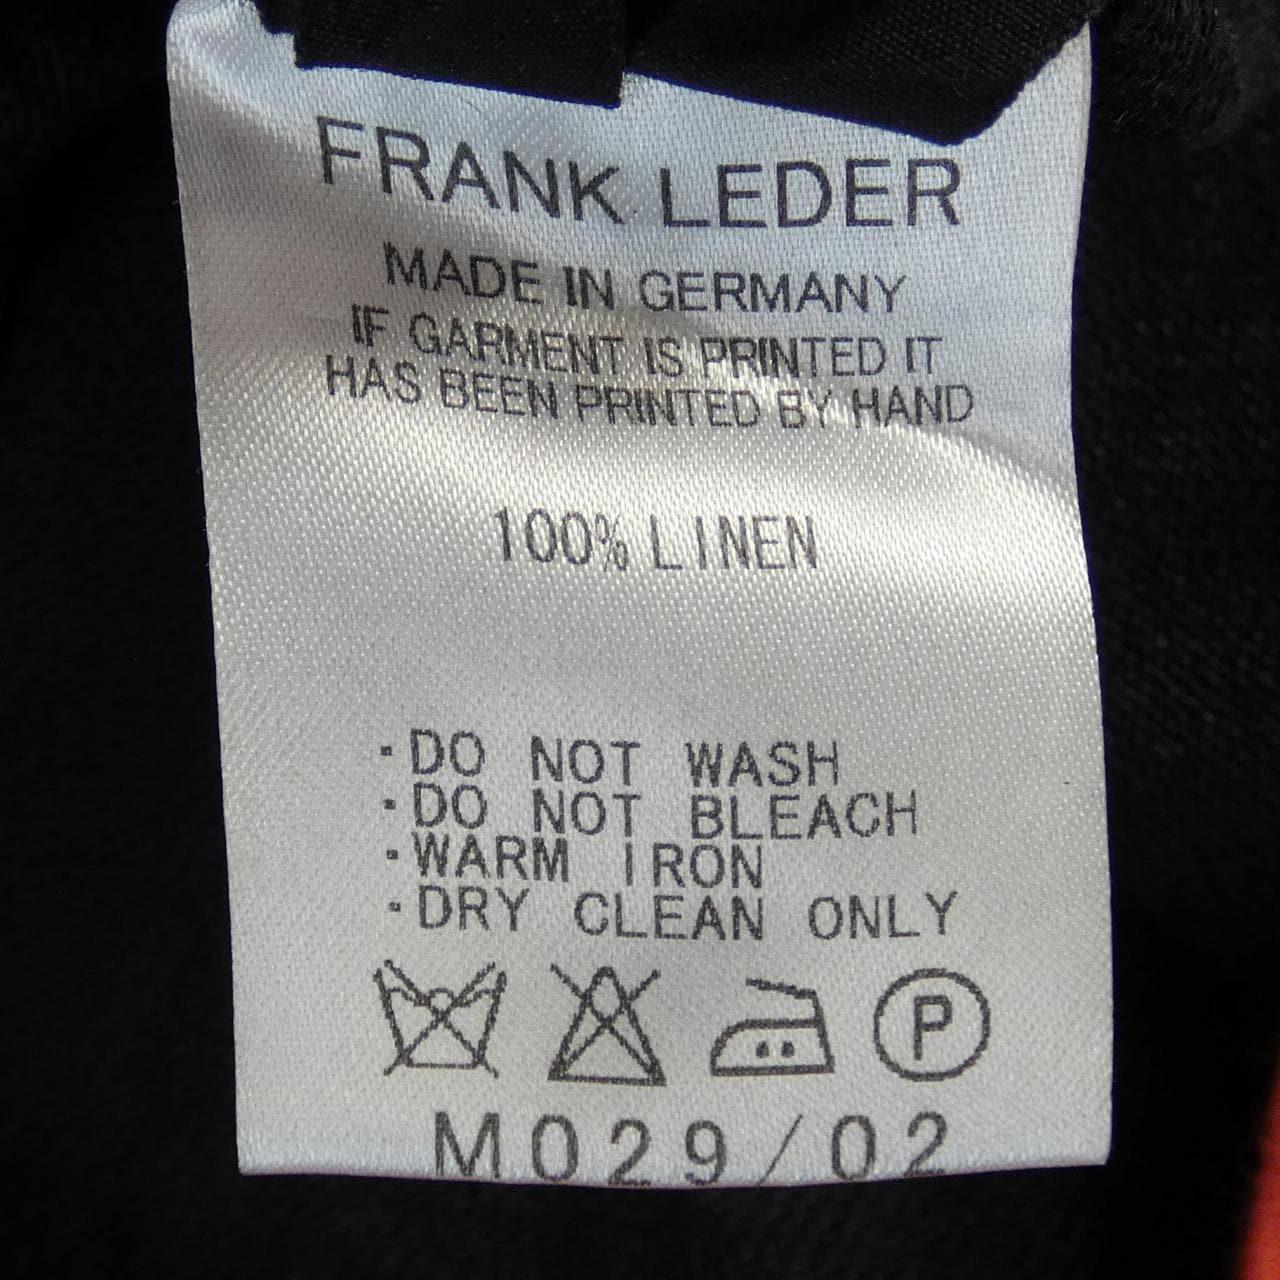 FRANK LEDER弗蘭克·萊德開衫